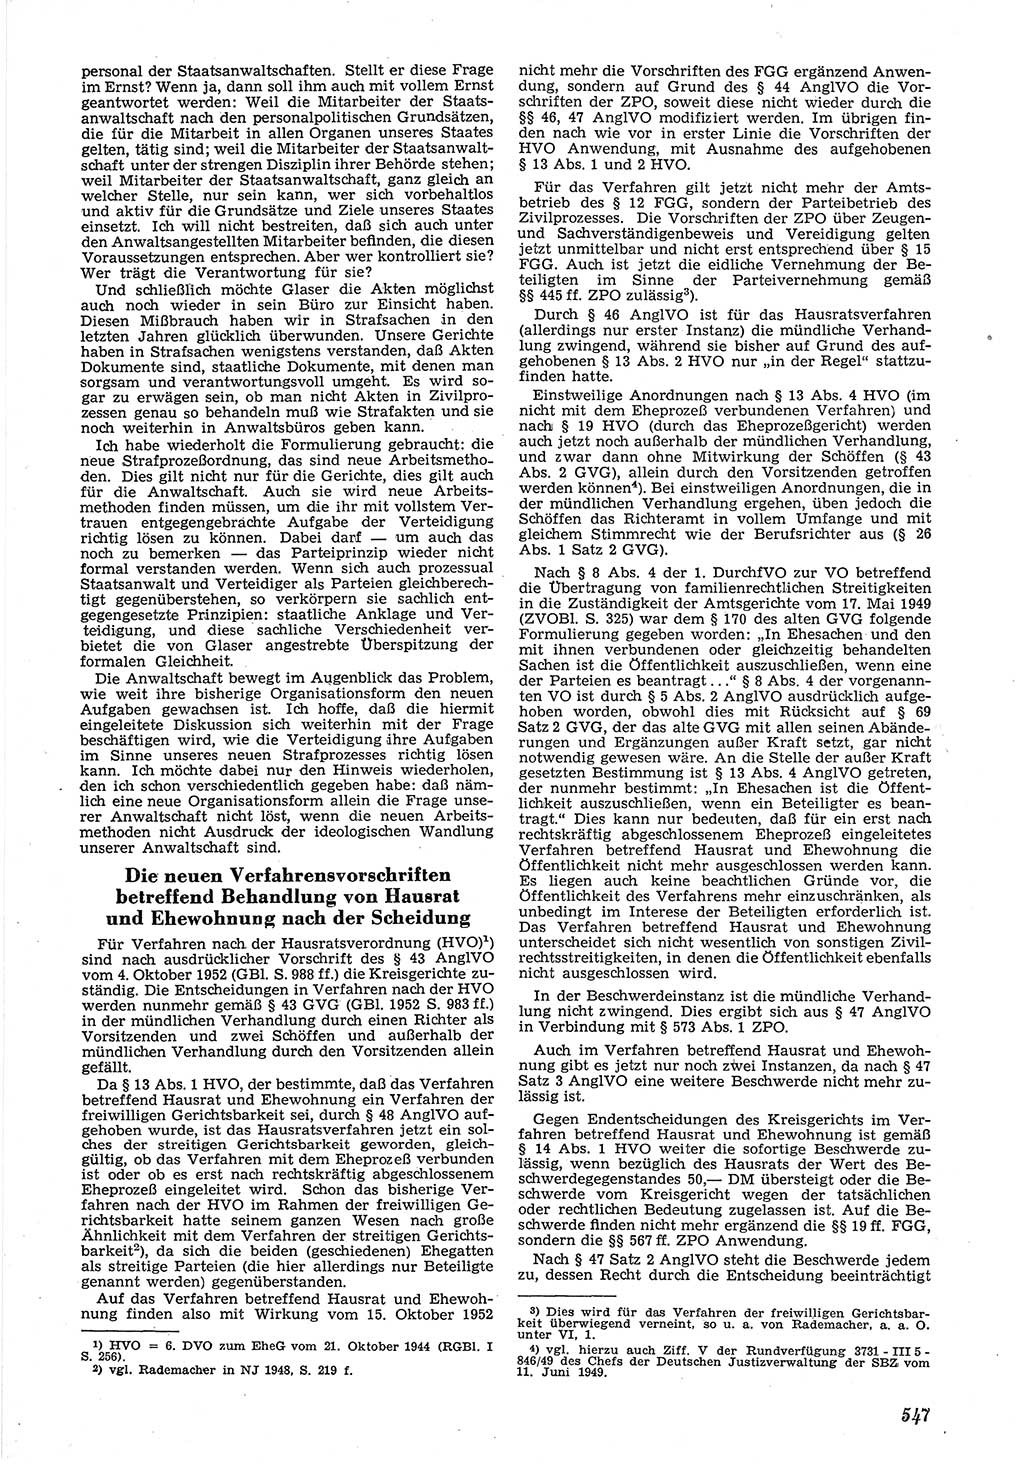 Neue Justiz (NJ), Zeitschrift für Recht und Rechtswissenschaft [Deutsche Demokratische Republik (DDR)], 6. Jahrgang 1952, Seite 547 (NJ DDR 1952, S. 547)